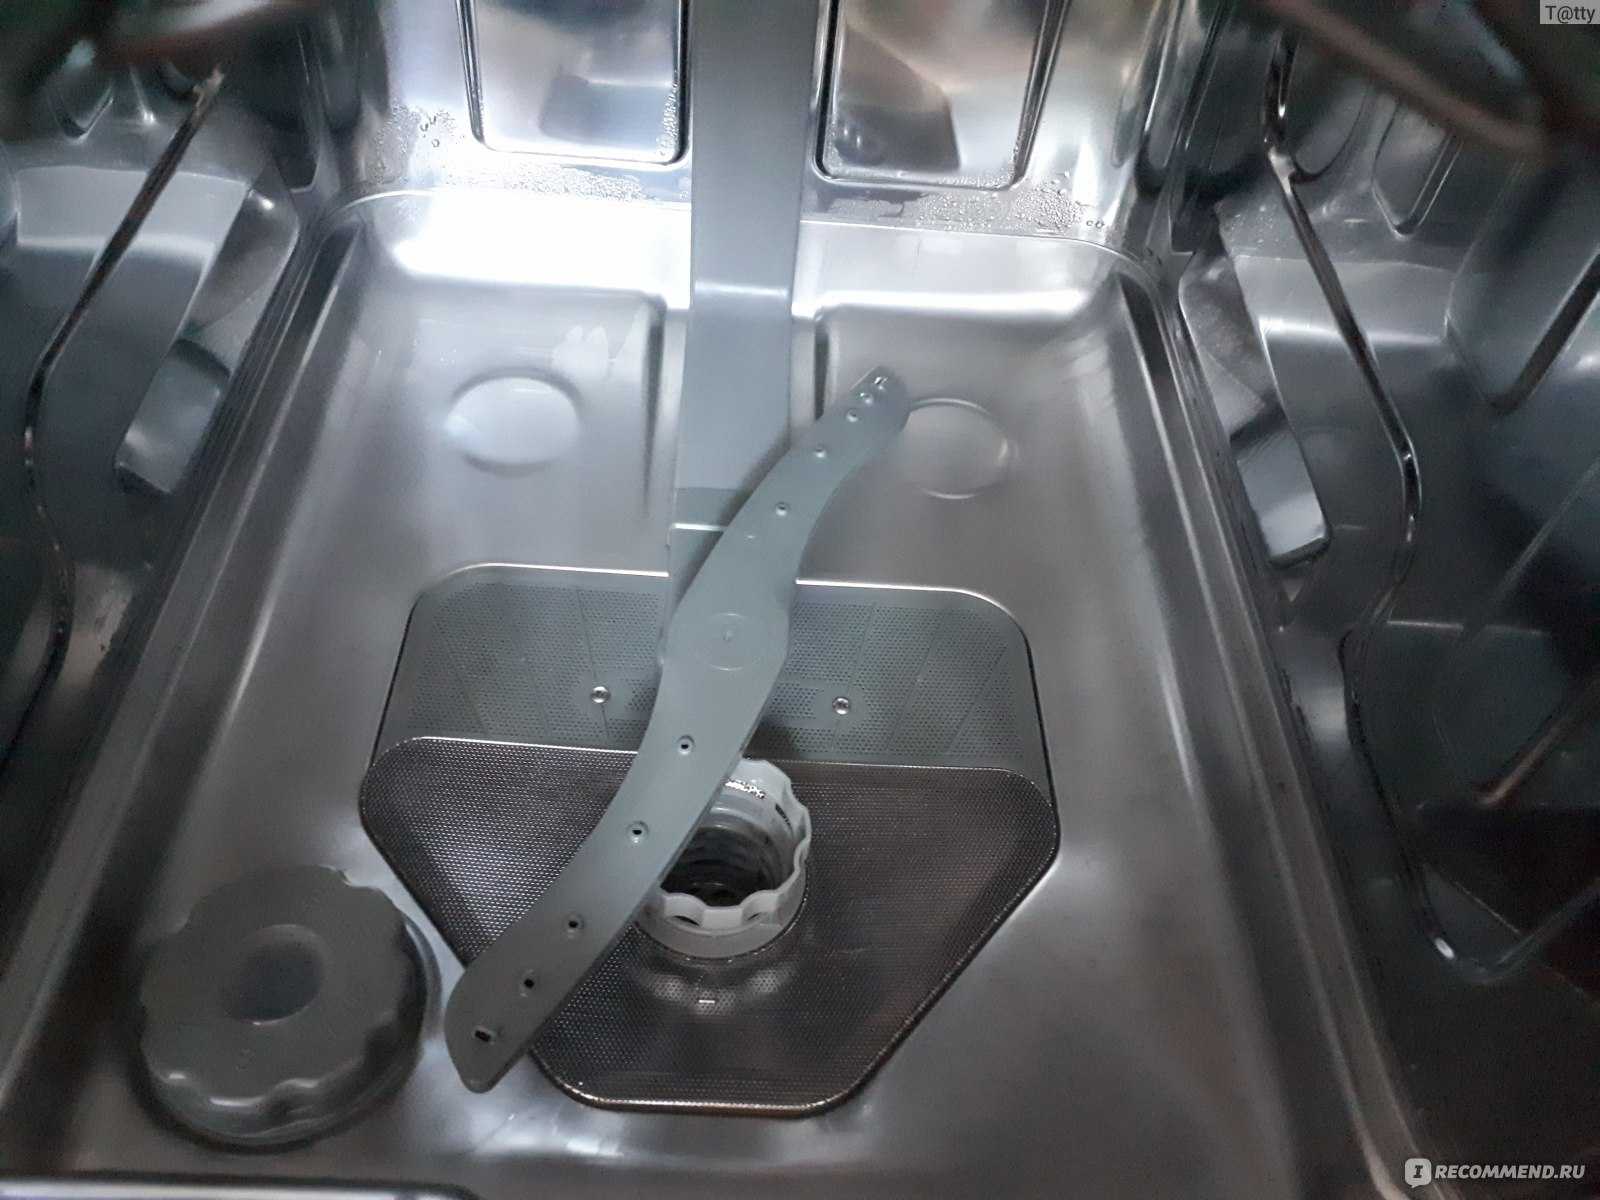 Вода в посудомоечной машинке